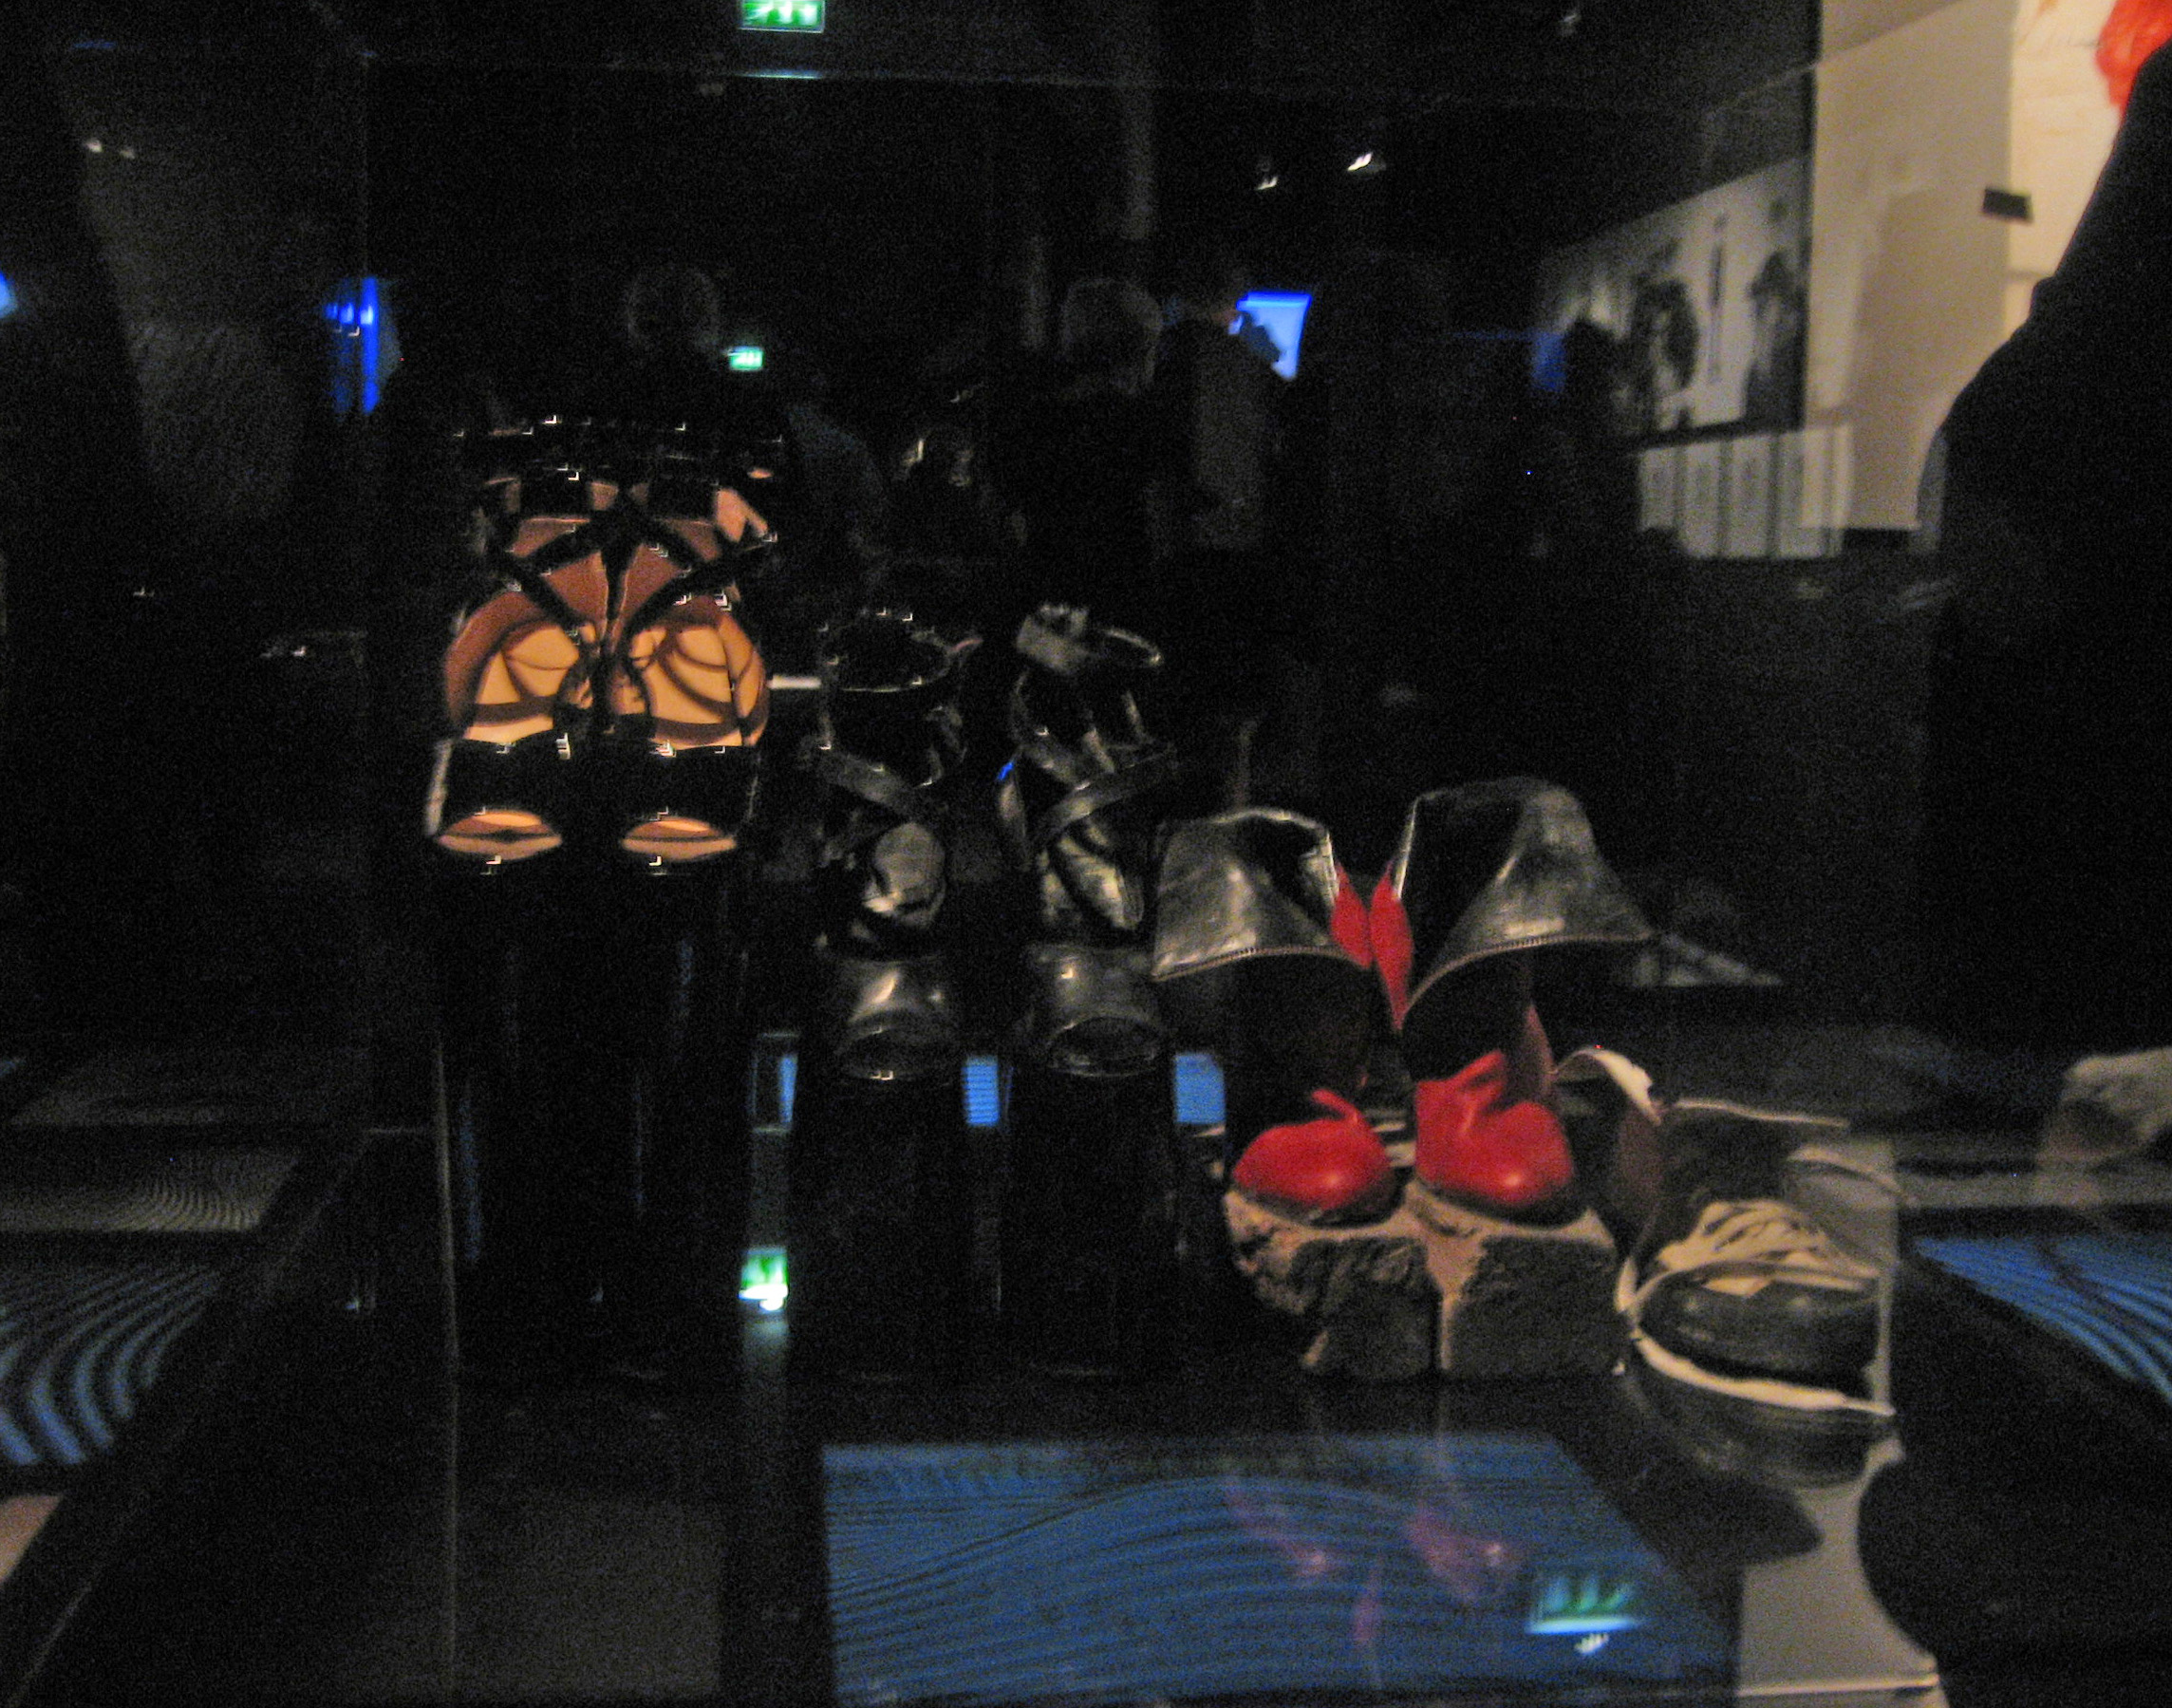  Chaussure à l'exposition 